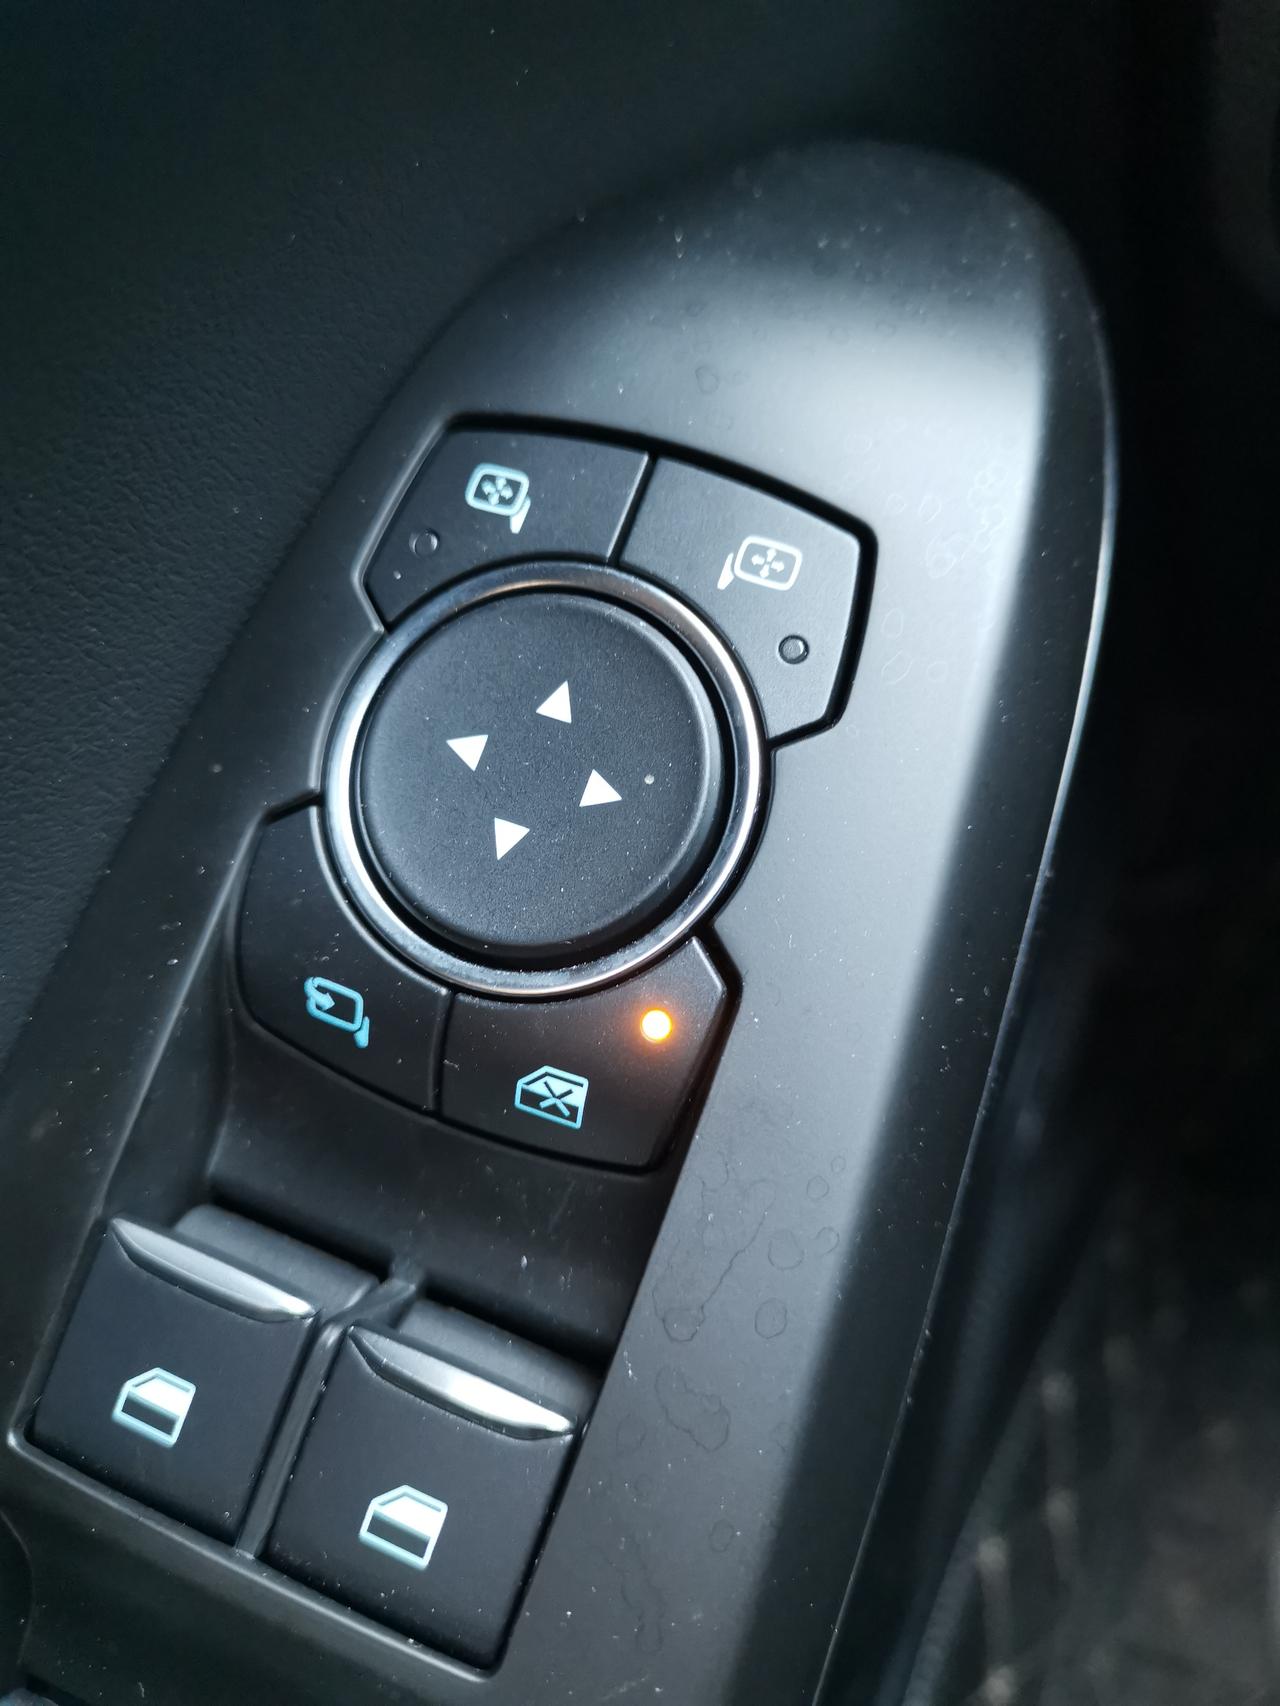 福特福克斯 亮灯这个按键是除主驾外其他位置的车窗不能落下吗   我试了一下  好像不是啊